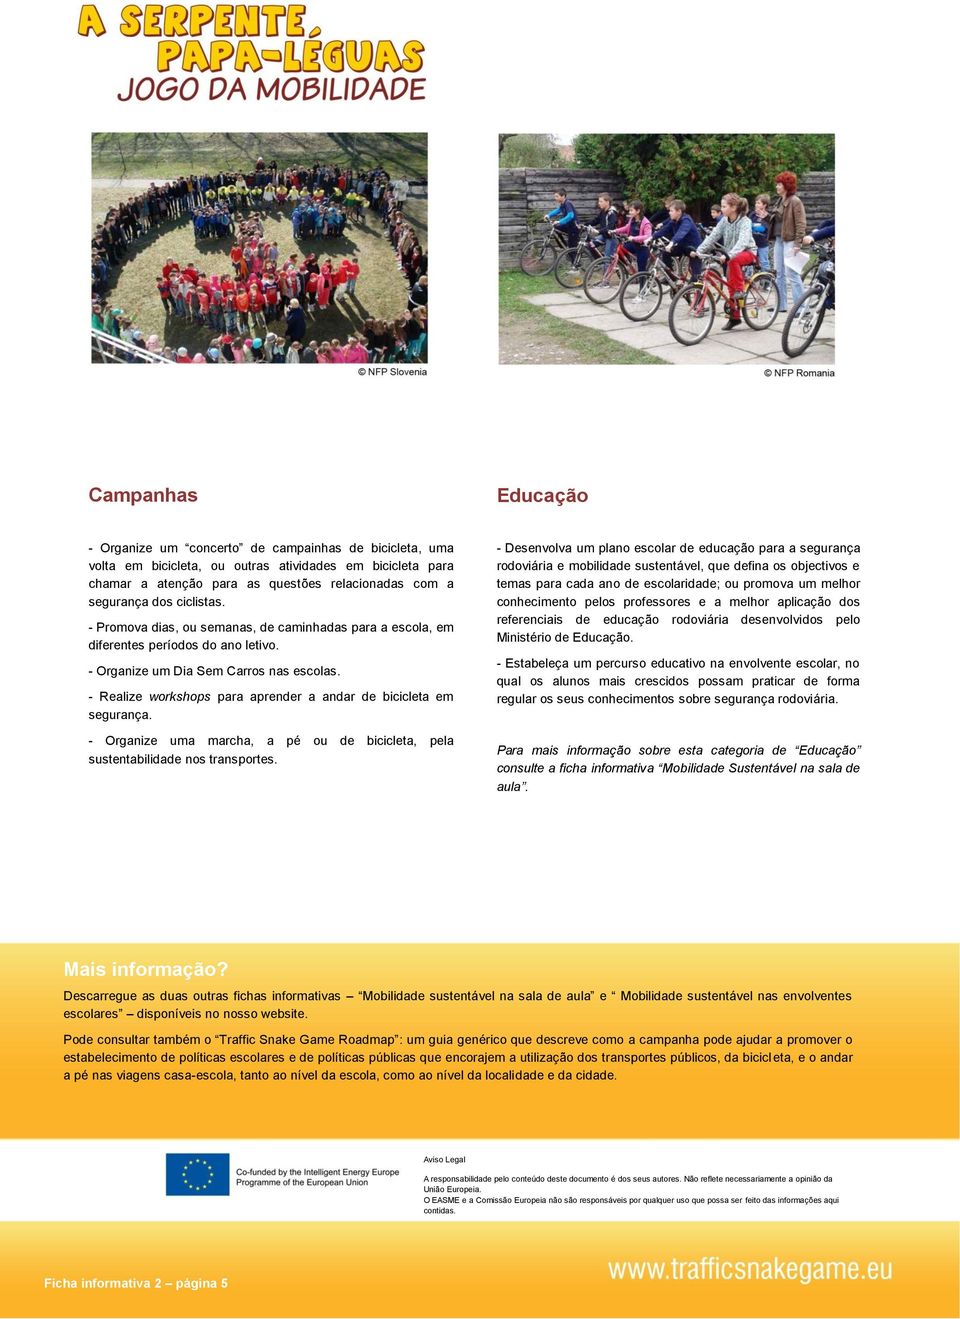 - Realize workshops para aprender a andar de bicicleta em segurança. - Organize uma marcha, a pé ou de bicicleta, pela sustentabilidade nos transportes.